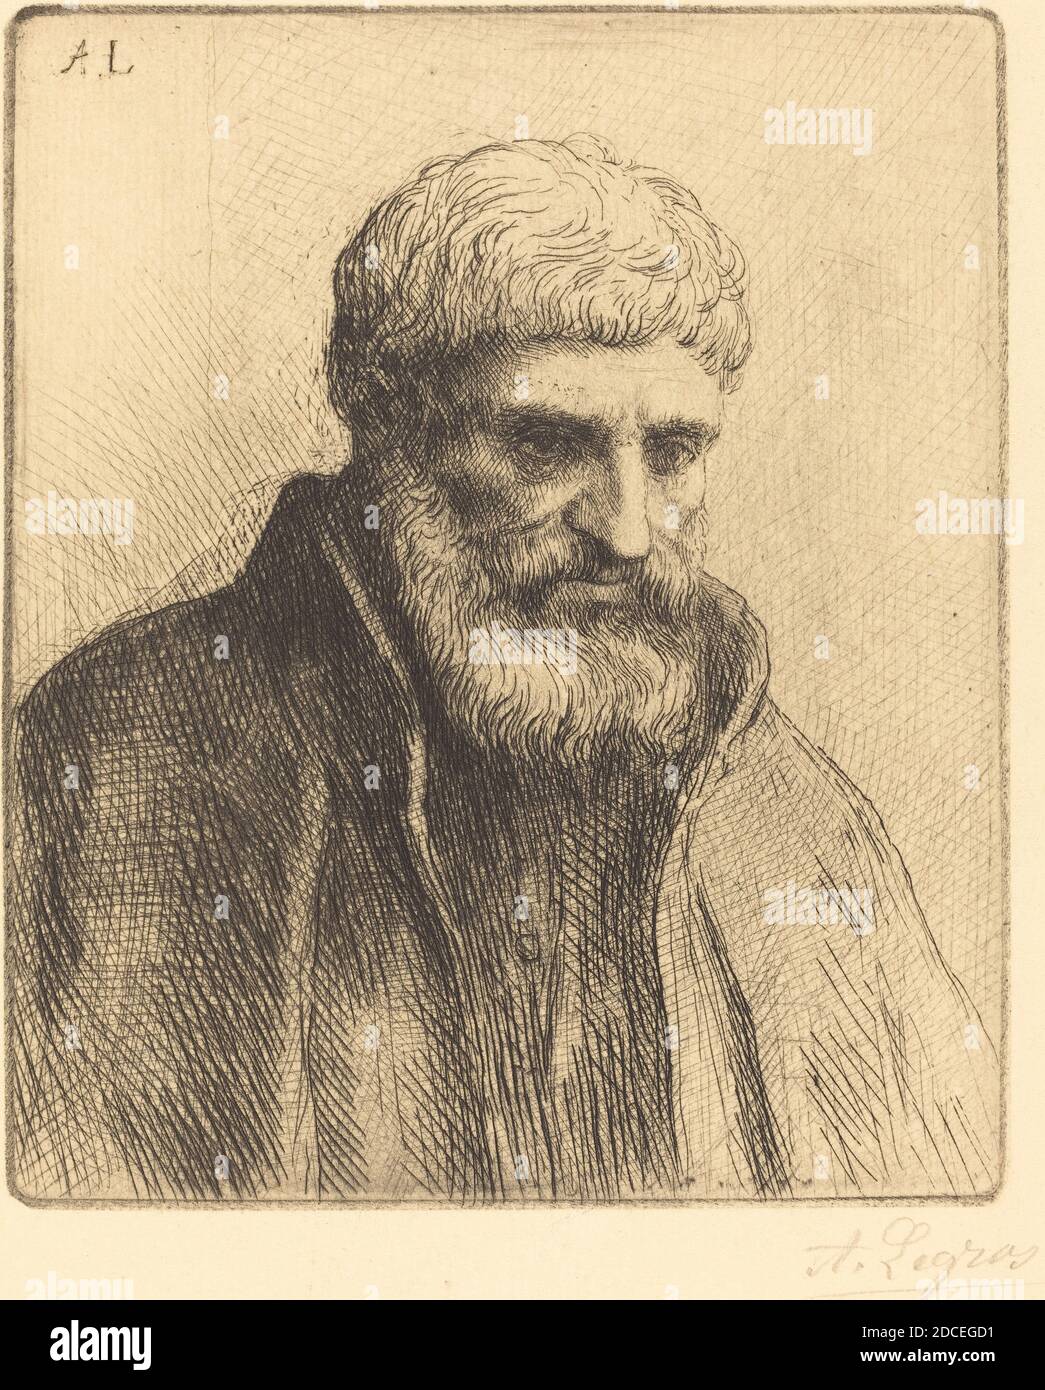 Alphonse Legros, (artist), French, 1837 - 1911, Study of an Old Man (Etude de vieillard), etching Stock Photo